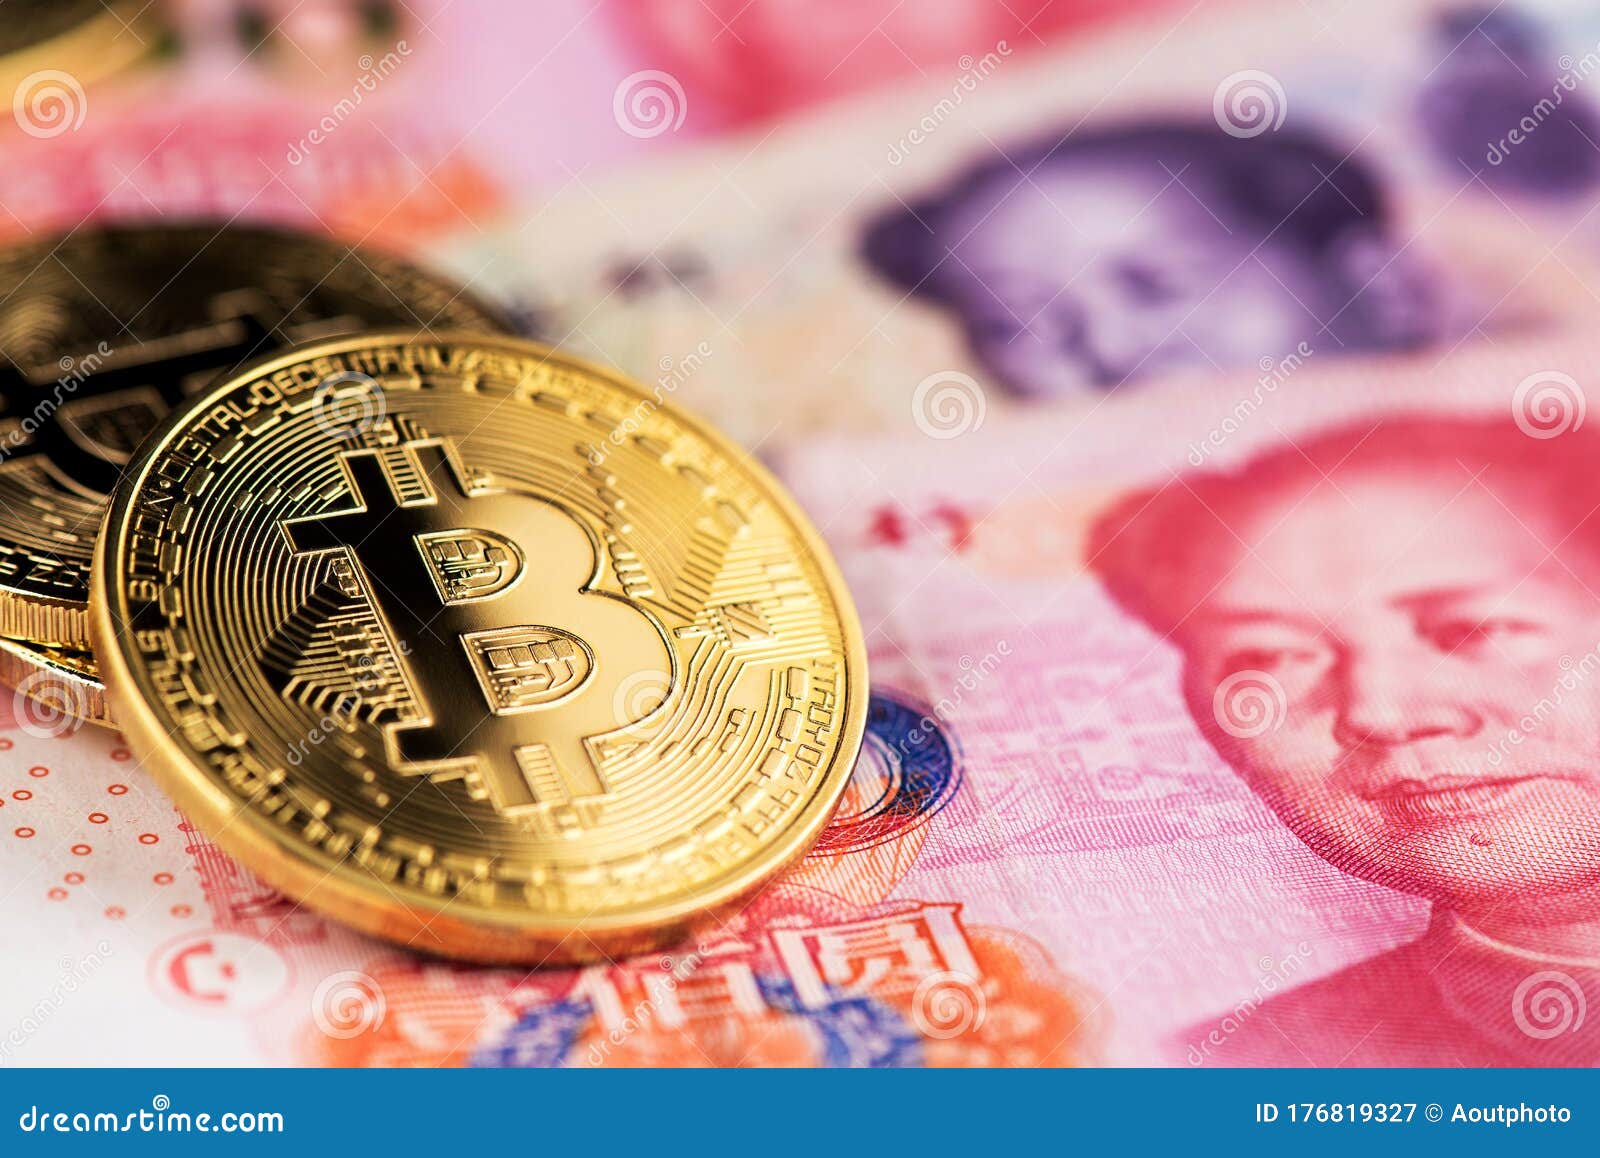 jüan bitcoin bitcoin letéti piac